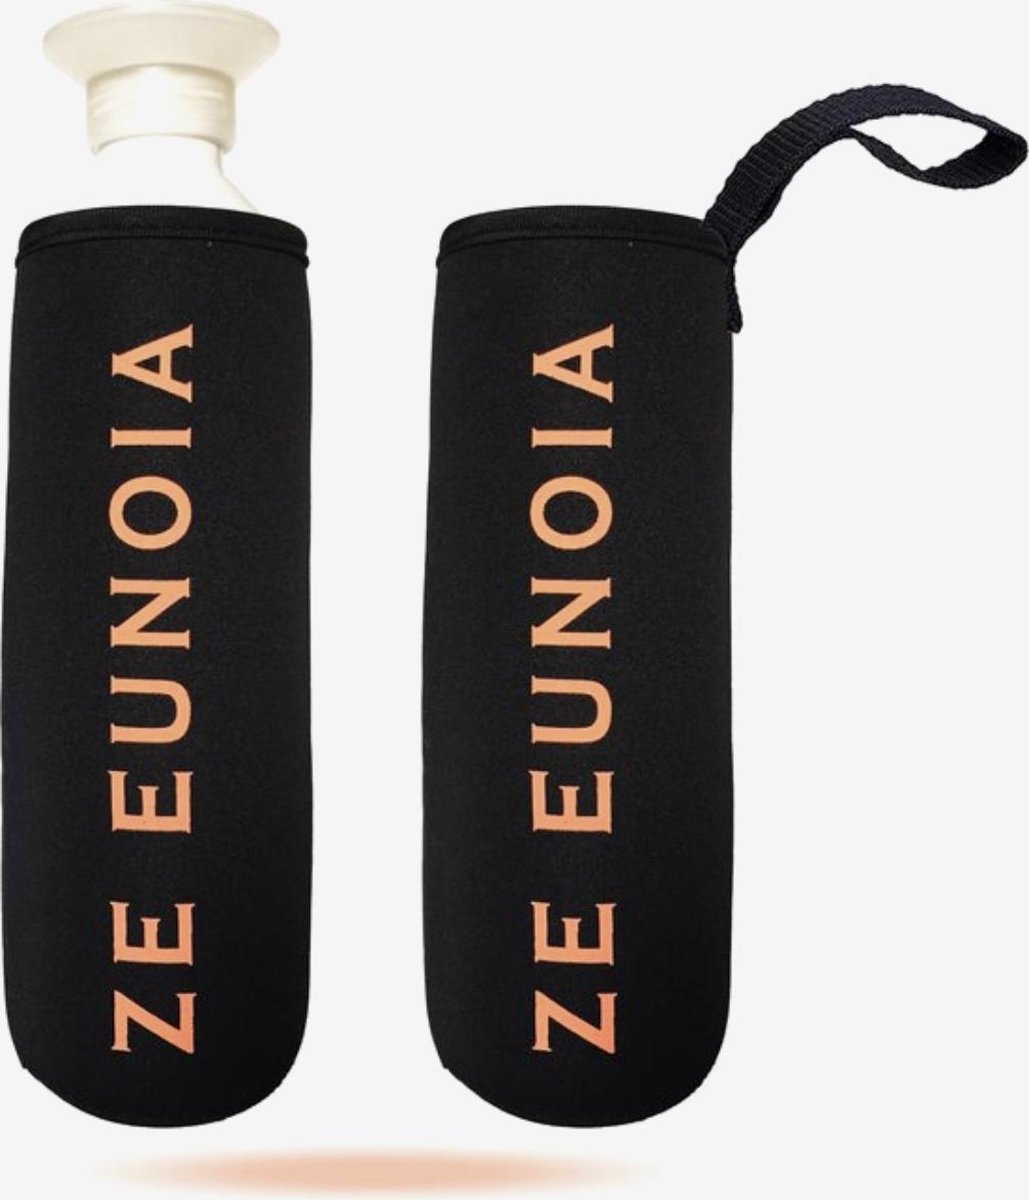 Drinkflessenhouder Tas voor fles - Opberghoes voor drankfles - Duurzaam en handig - flessenhouder - Zwart - Ze Eunoia®